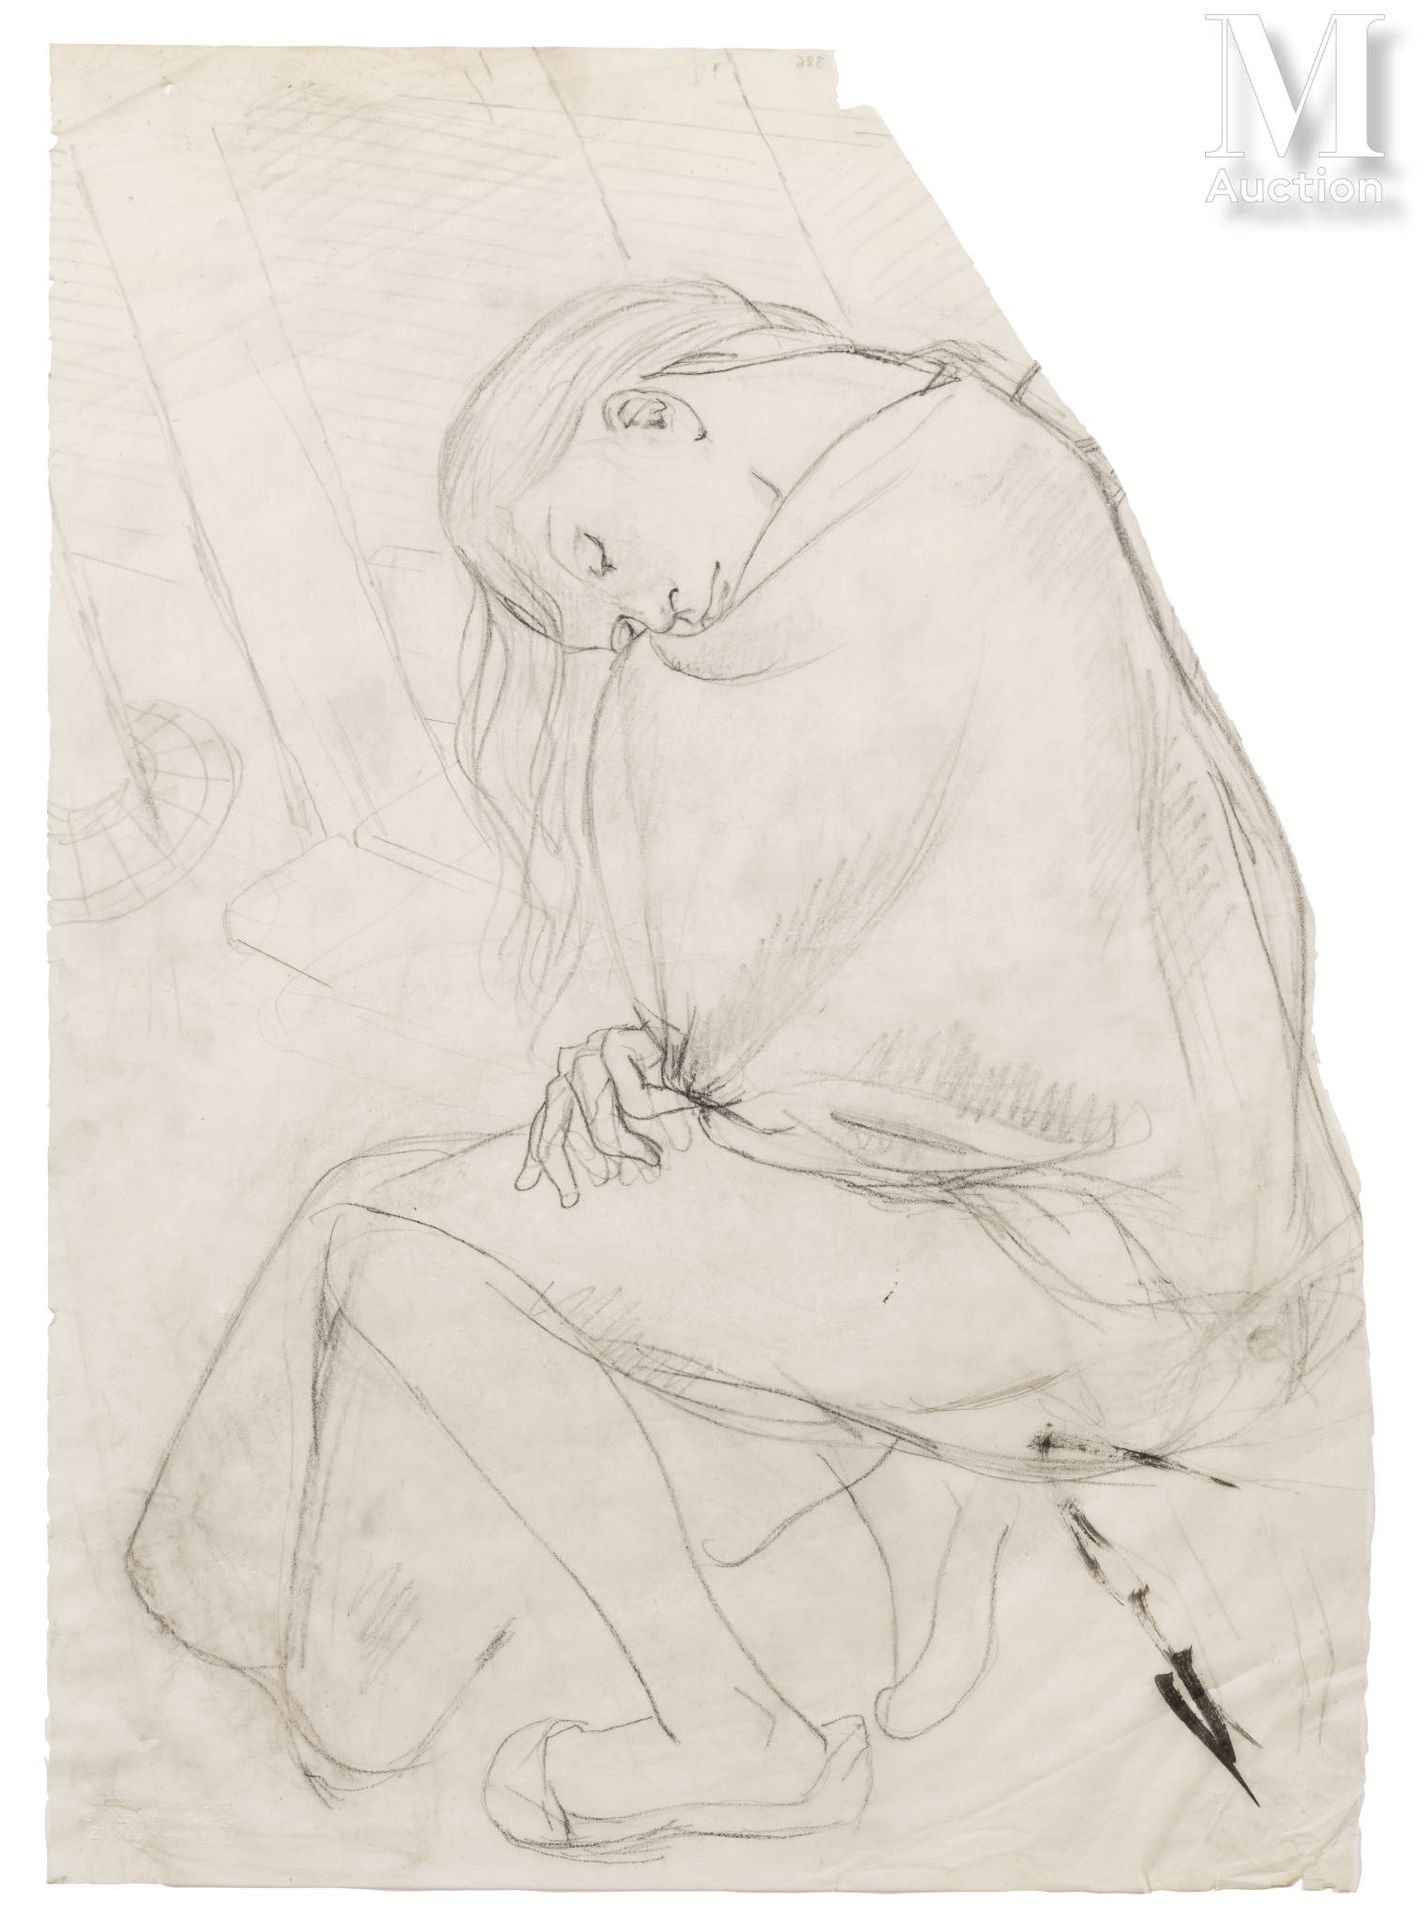 Leonard Tsuguharu FOUJITA (Tokyo 1886 - Zurich 1968) Jeune femme endormie



Cra&hellip;